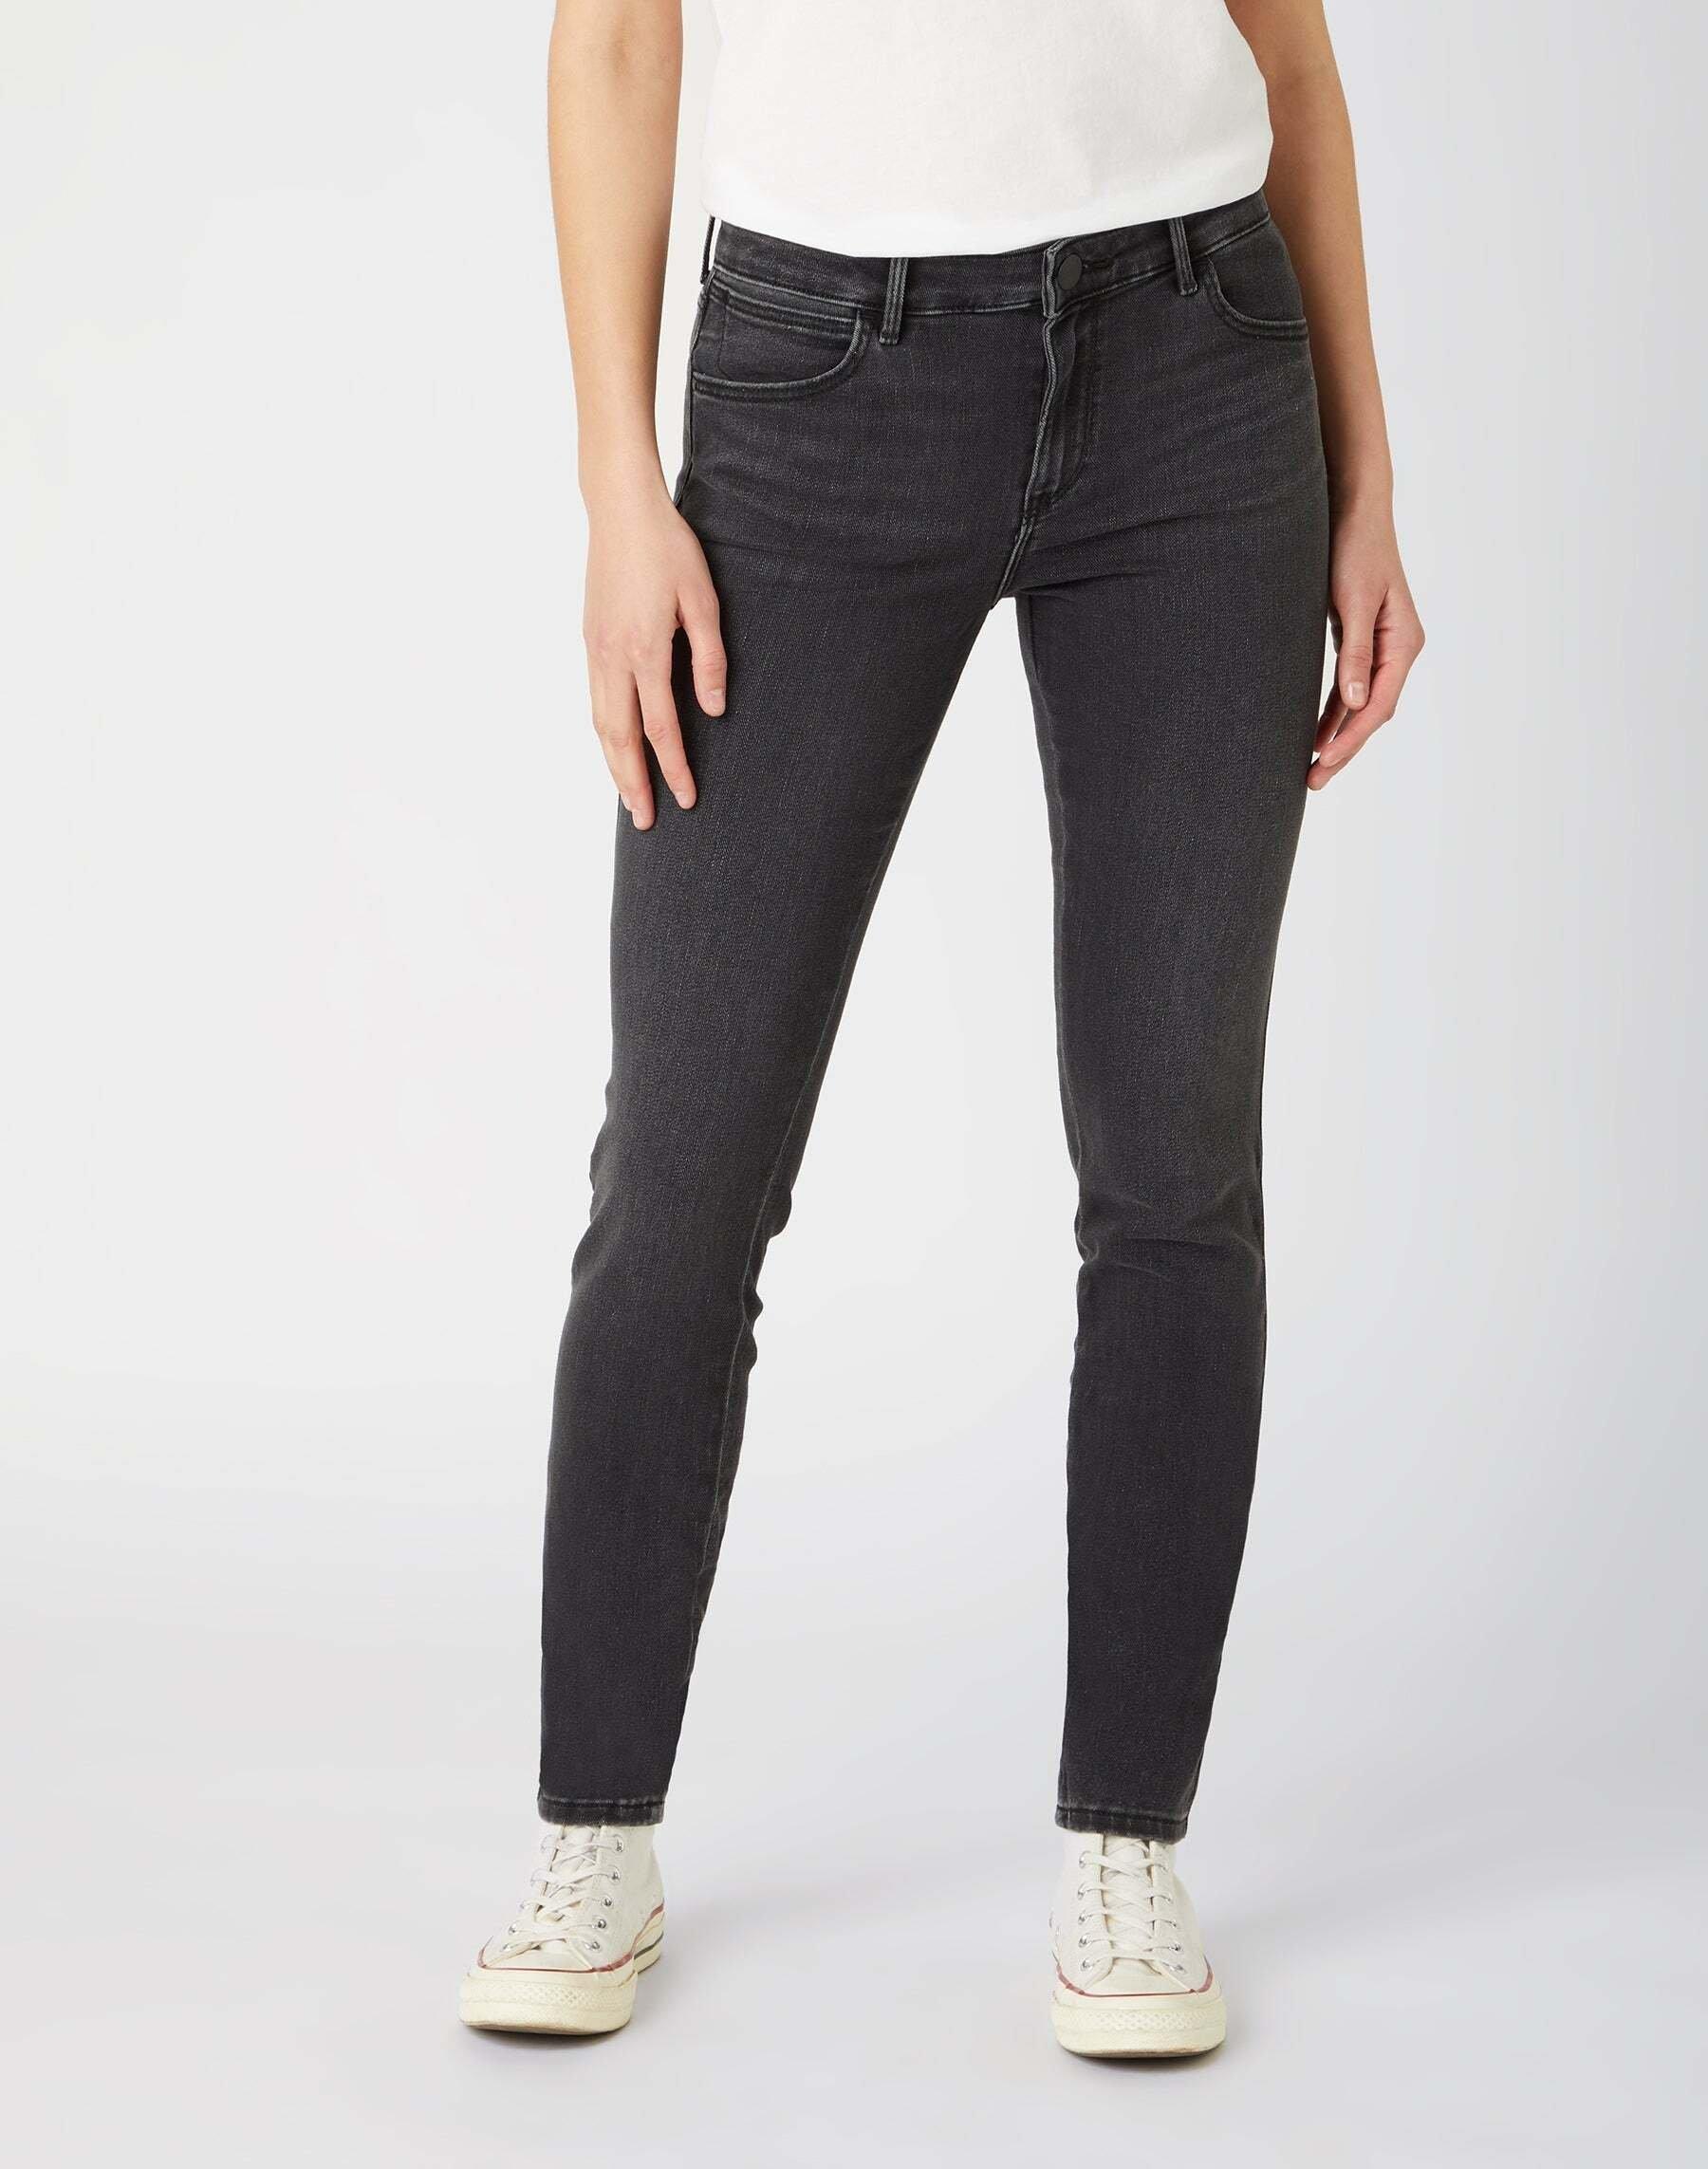 Jeans Skinny Fit Skinny Damen Schwarz Leicht L34/W31 von Wrangler